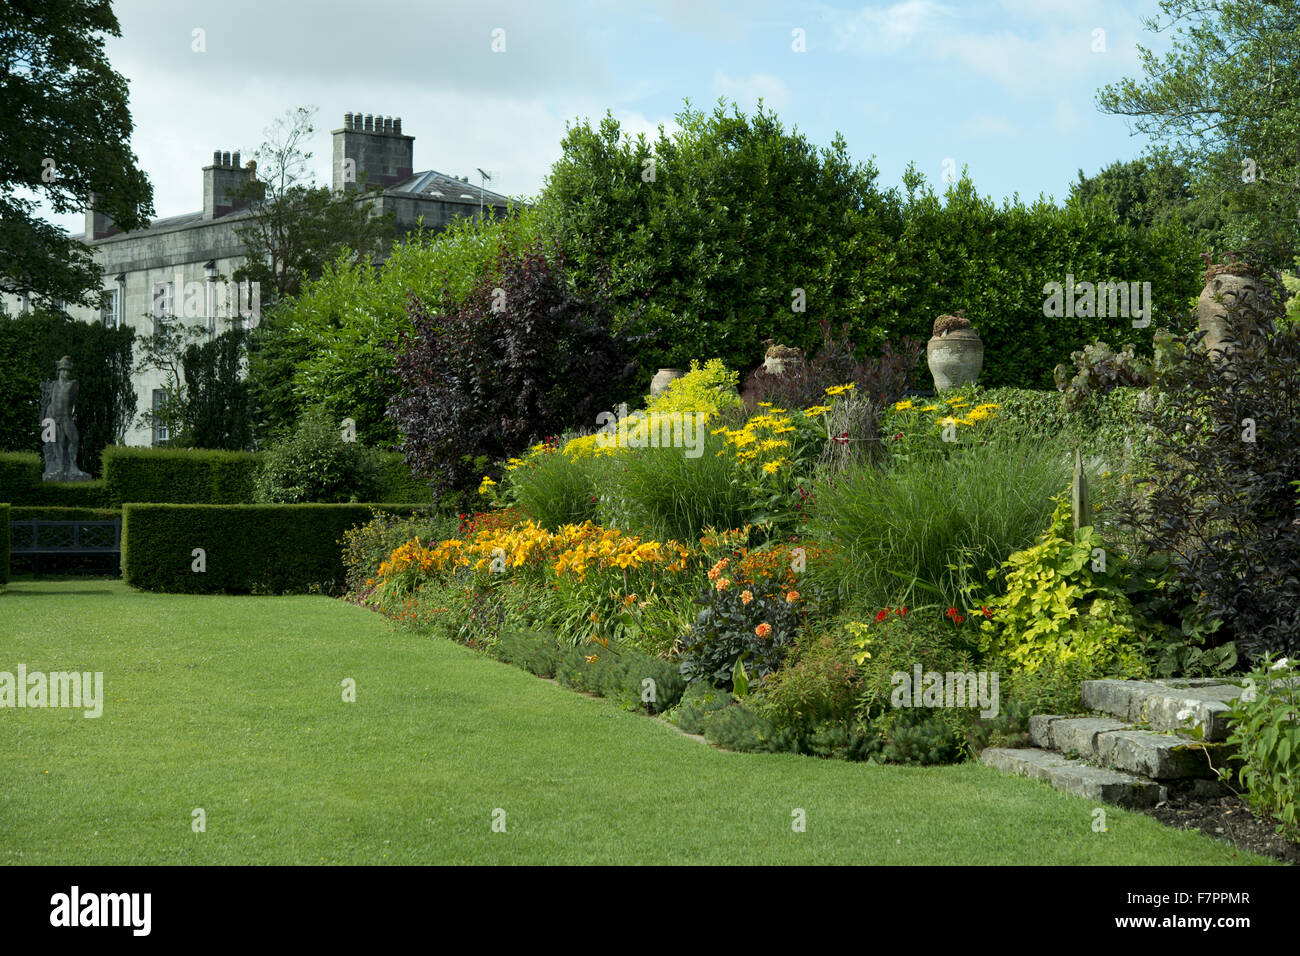 Das Haus vom Garten im Plas Newydd Country House und Gärten, Anglesey, Wales gesehen. Dieses feine 18. Jahrhundert Herrenhaus liegt an den Ufern der Menai Strait, mit atemberaubender Aussicht von Snowdonia. Stockfoto